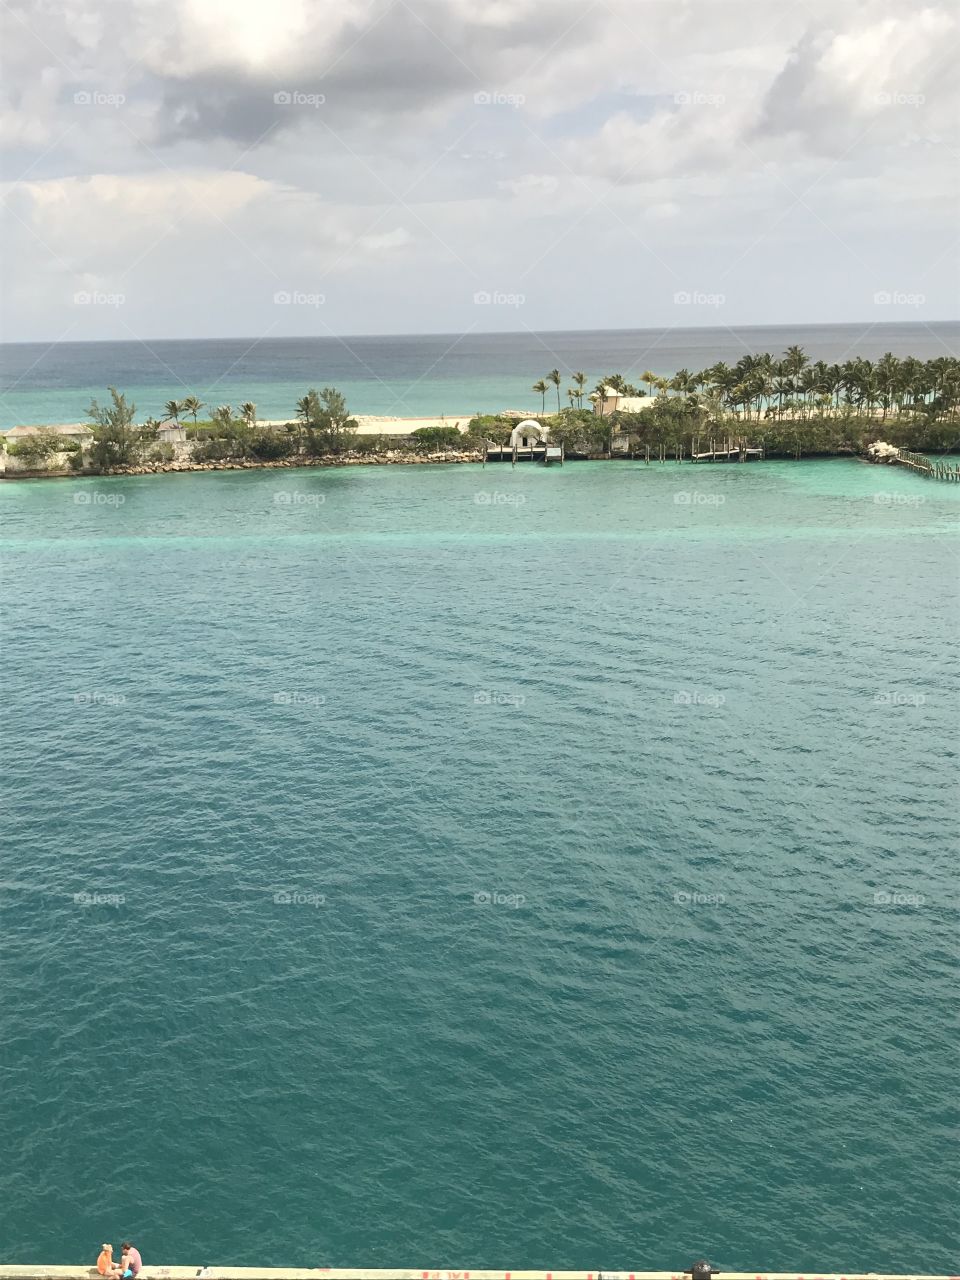 Bahamas 2018